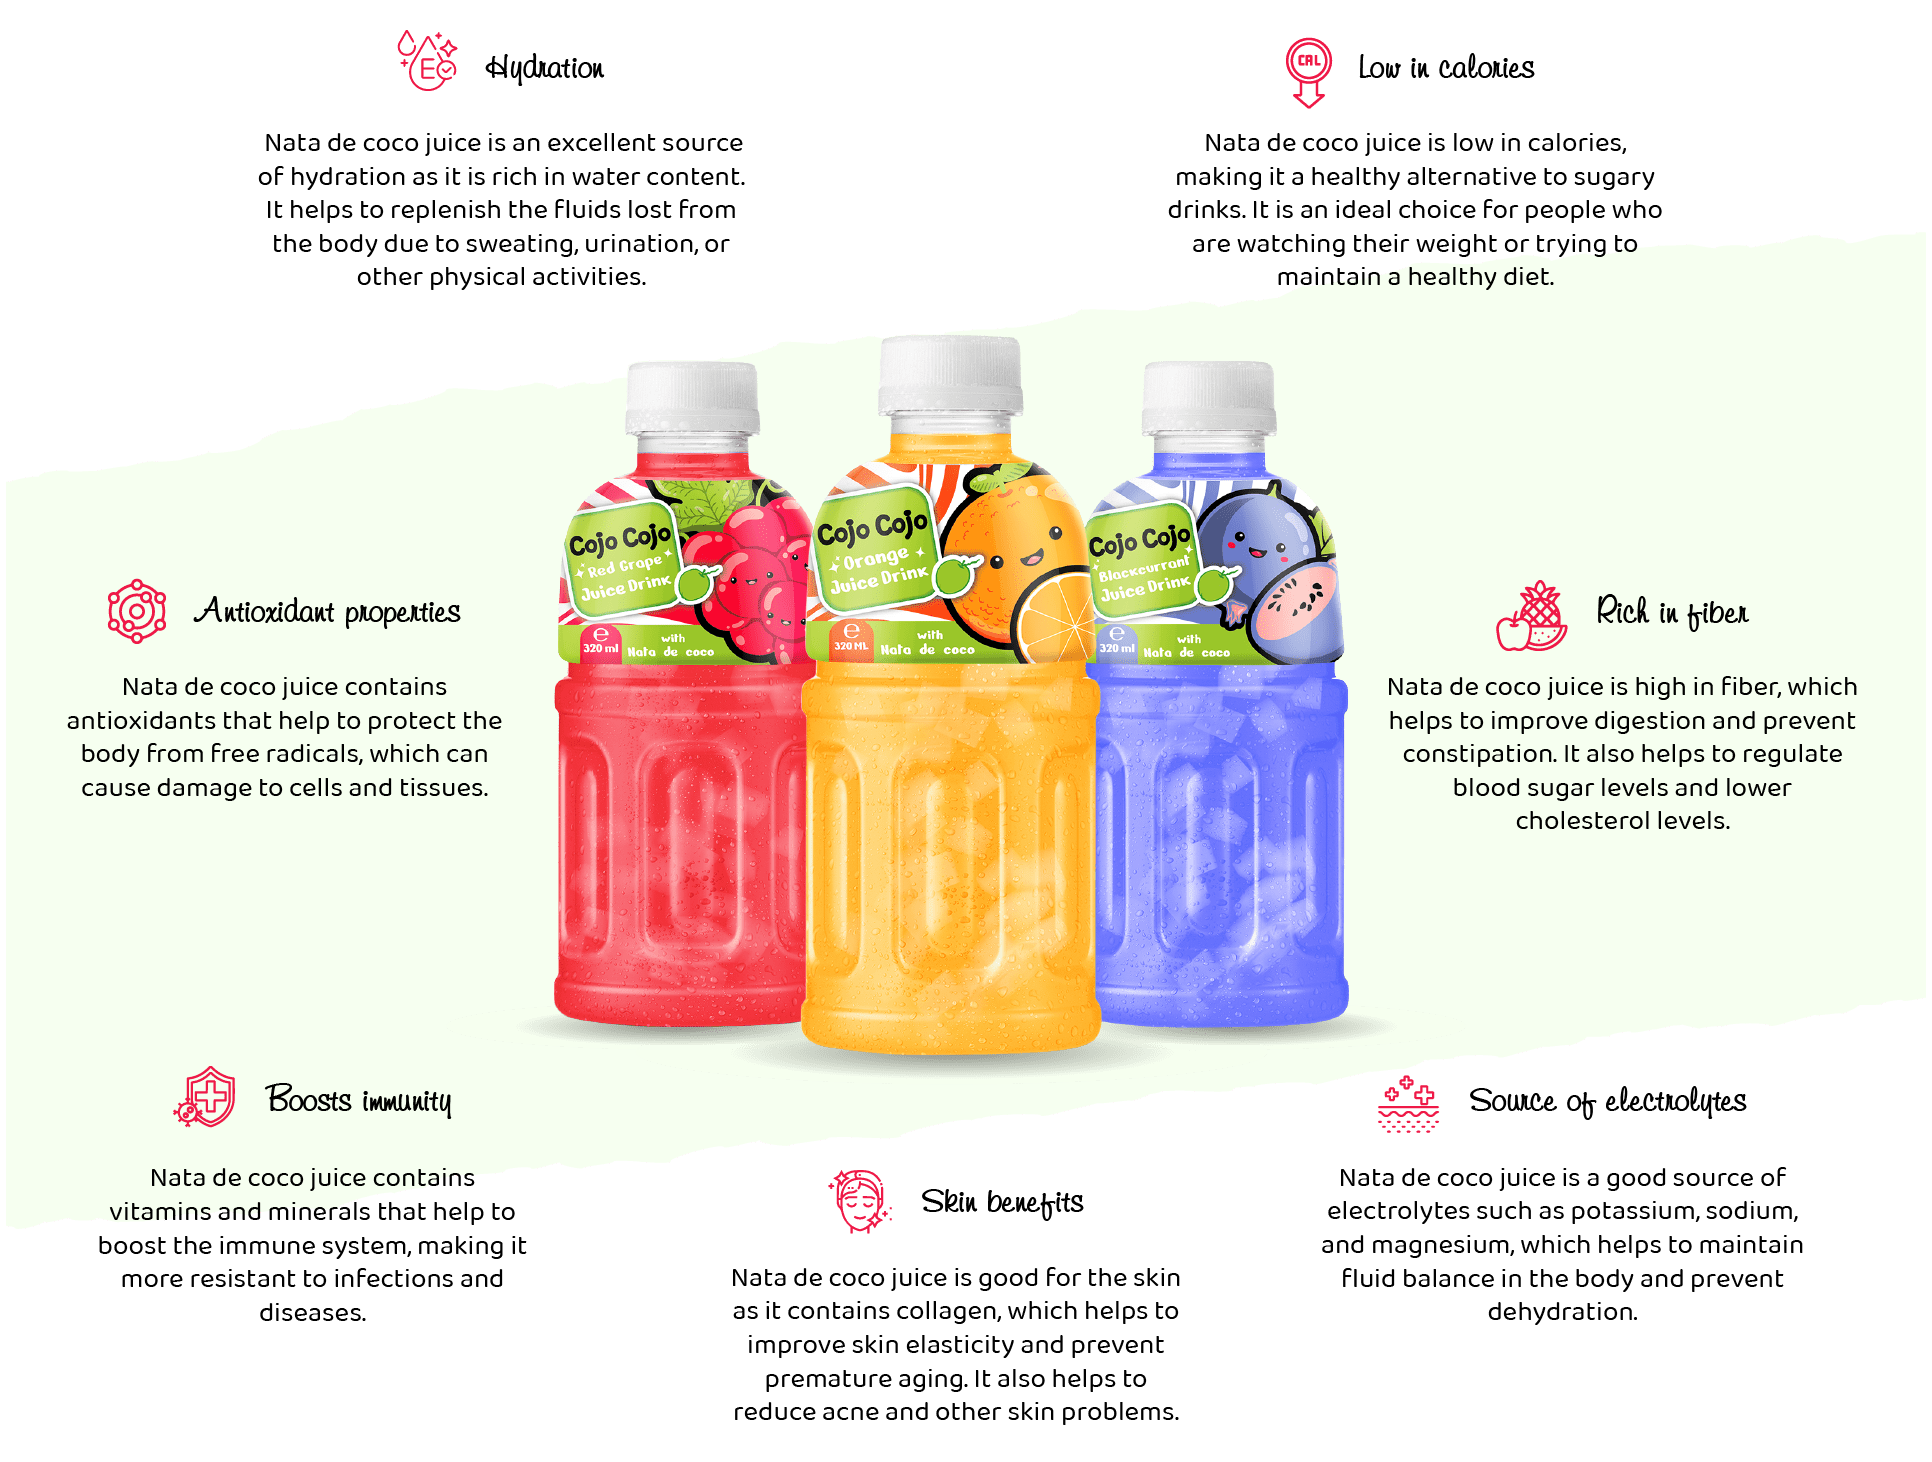 Nata de coco juice drink benefits